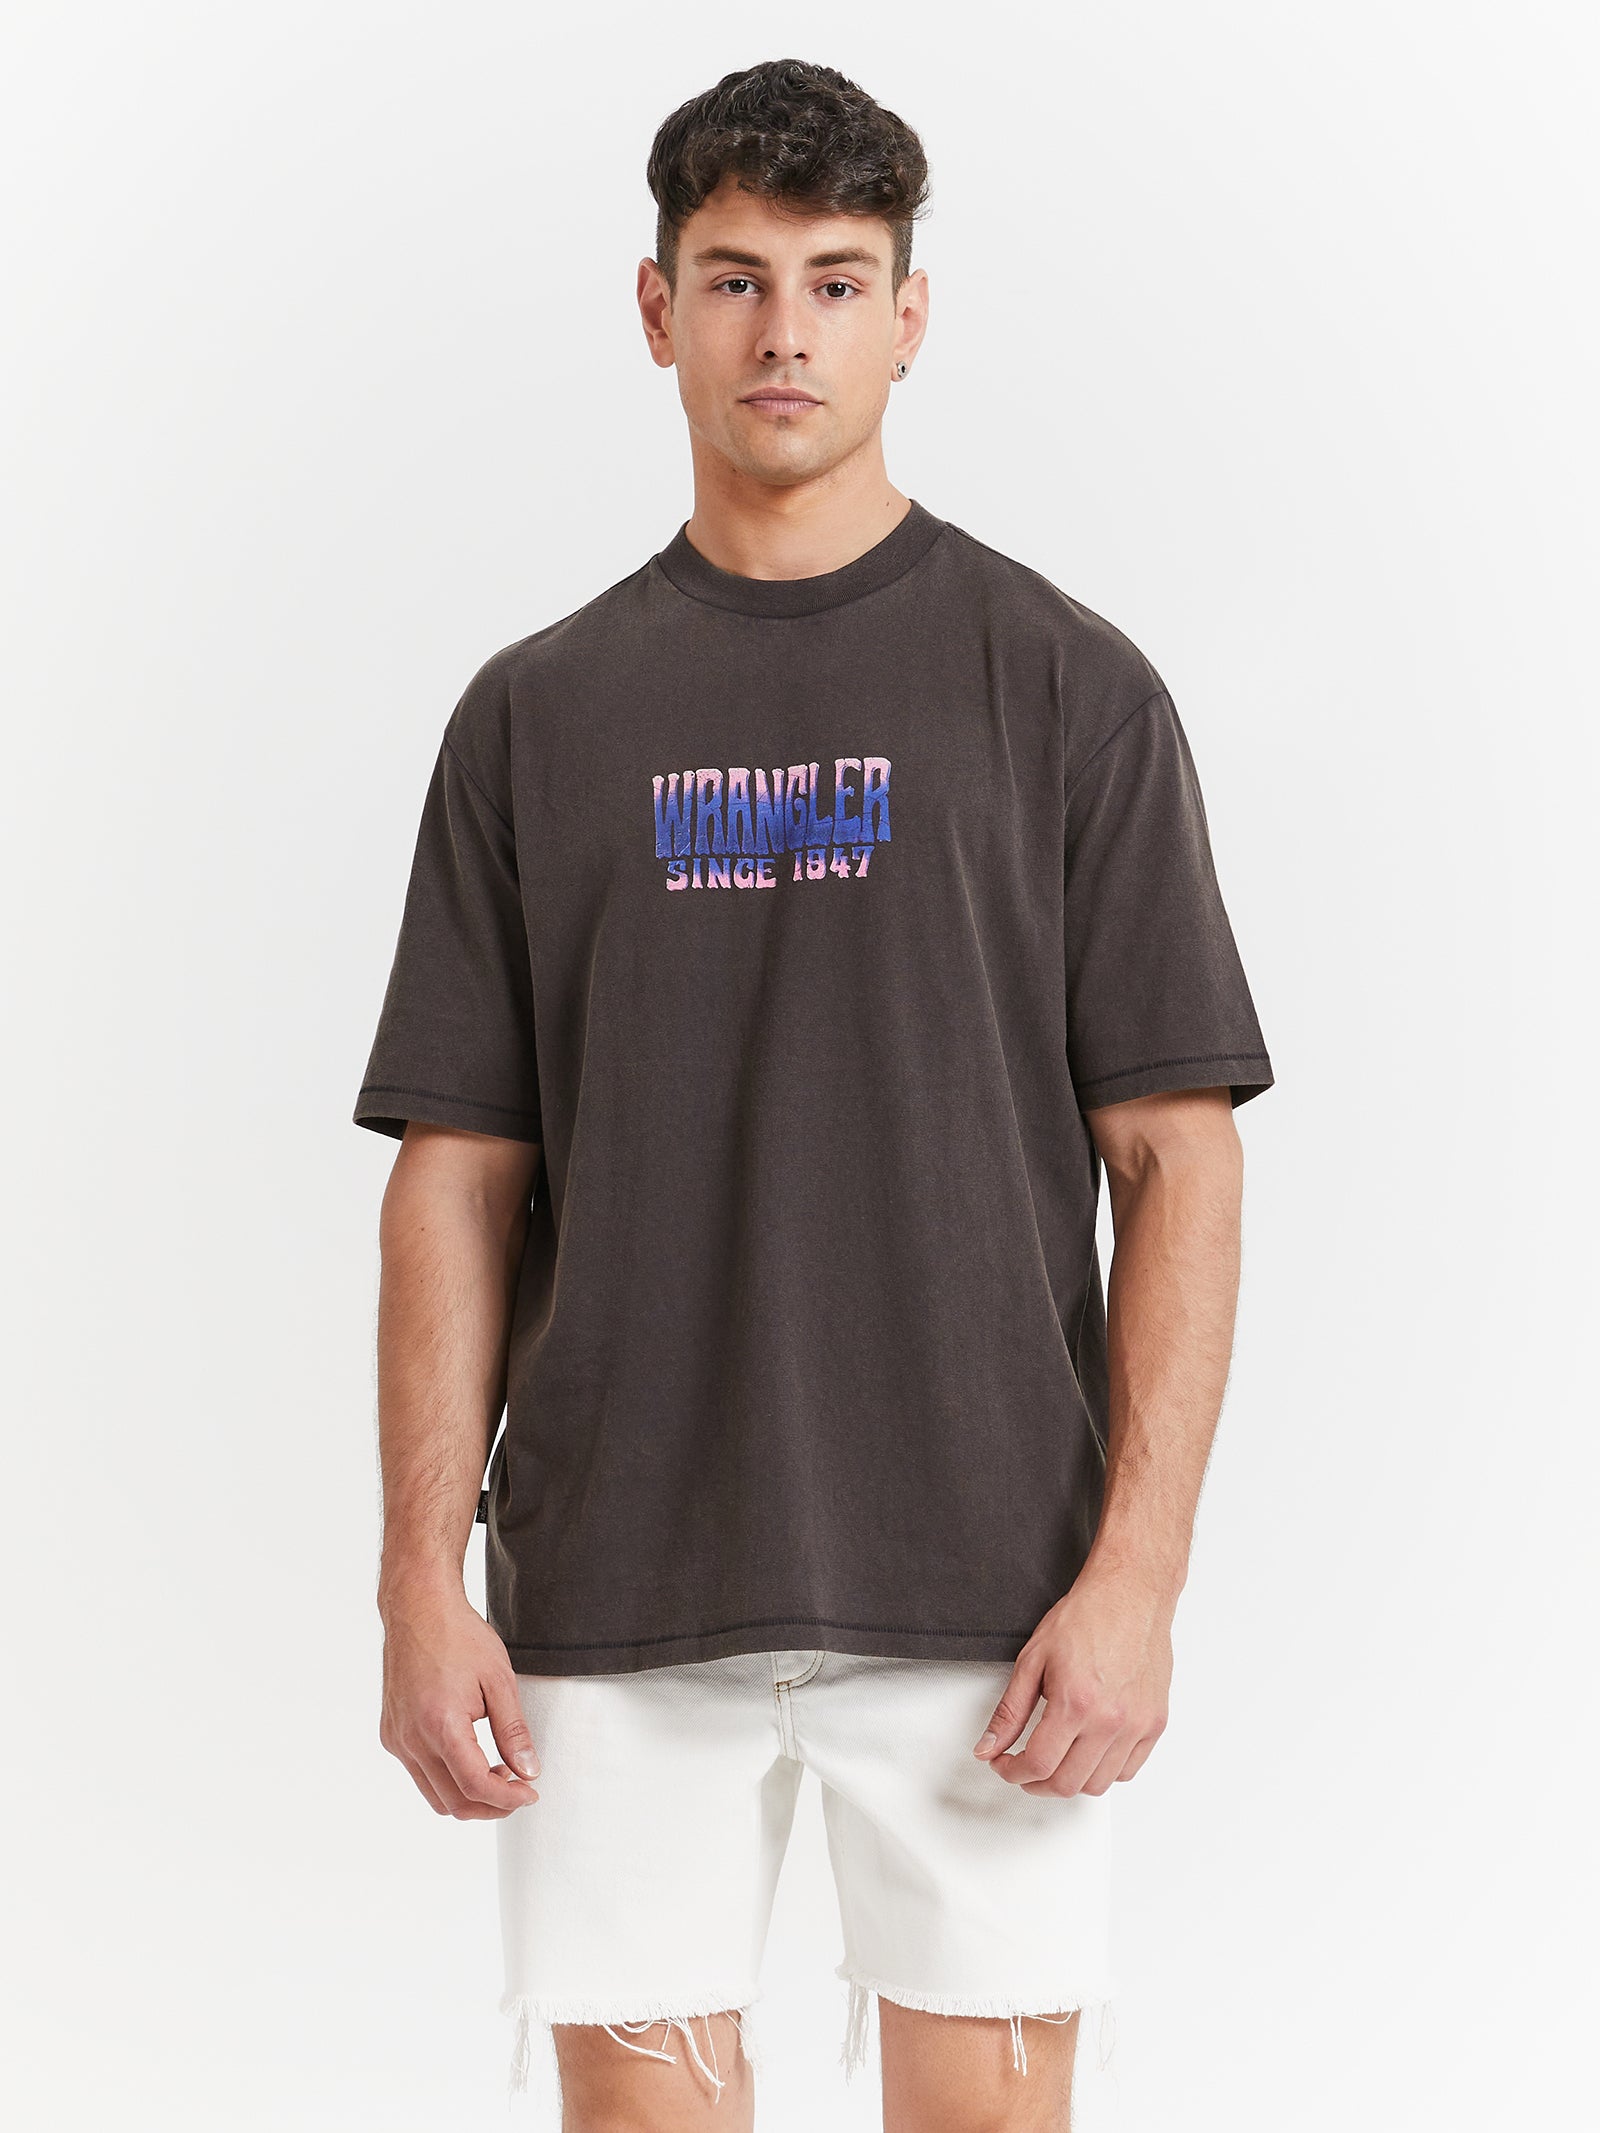 Mind Store Slacker Glue Worn Black T-Shirt Mirage - in